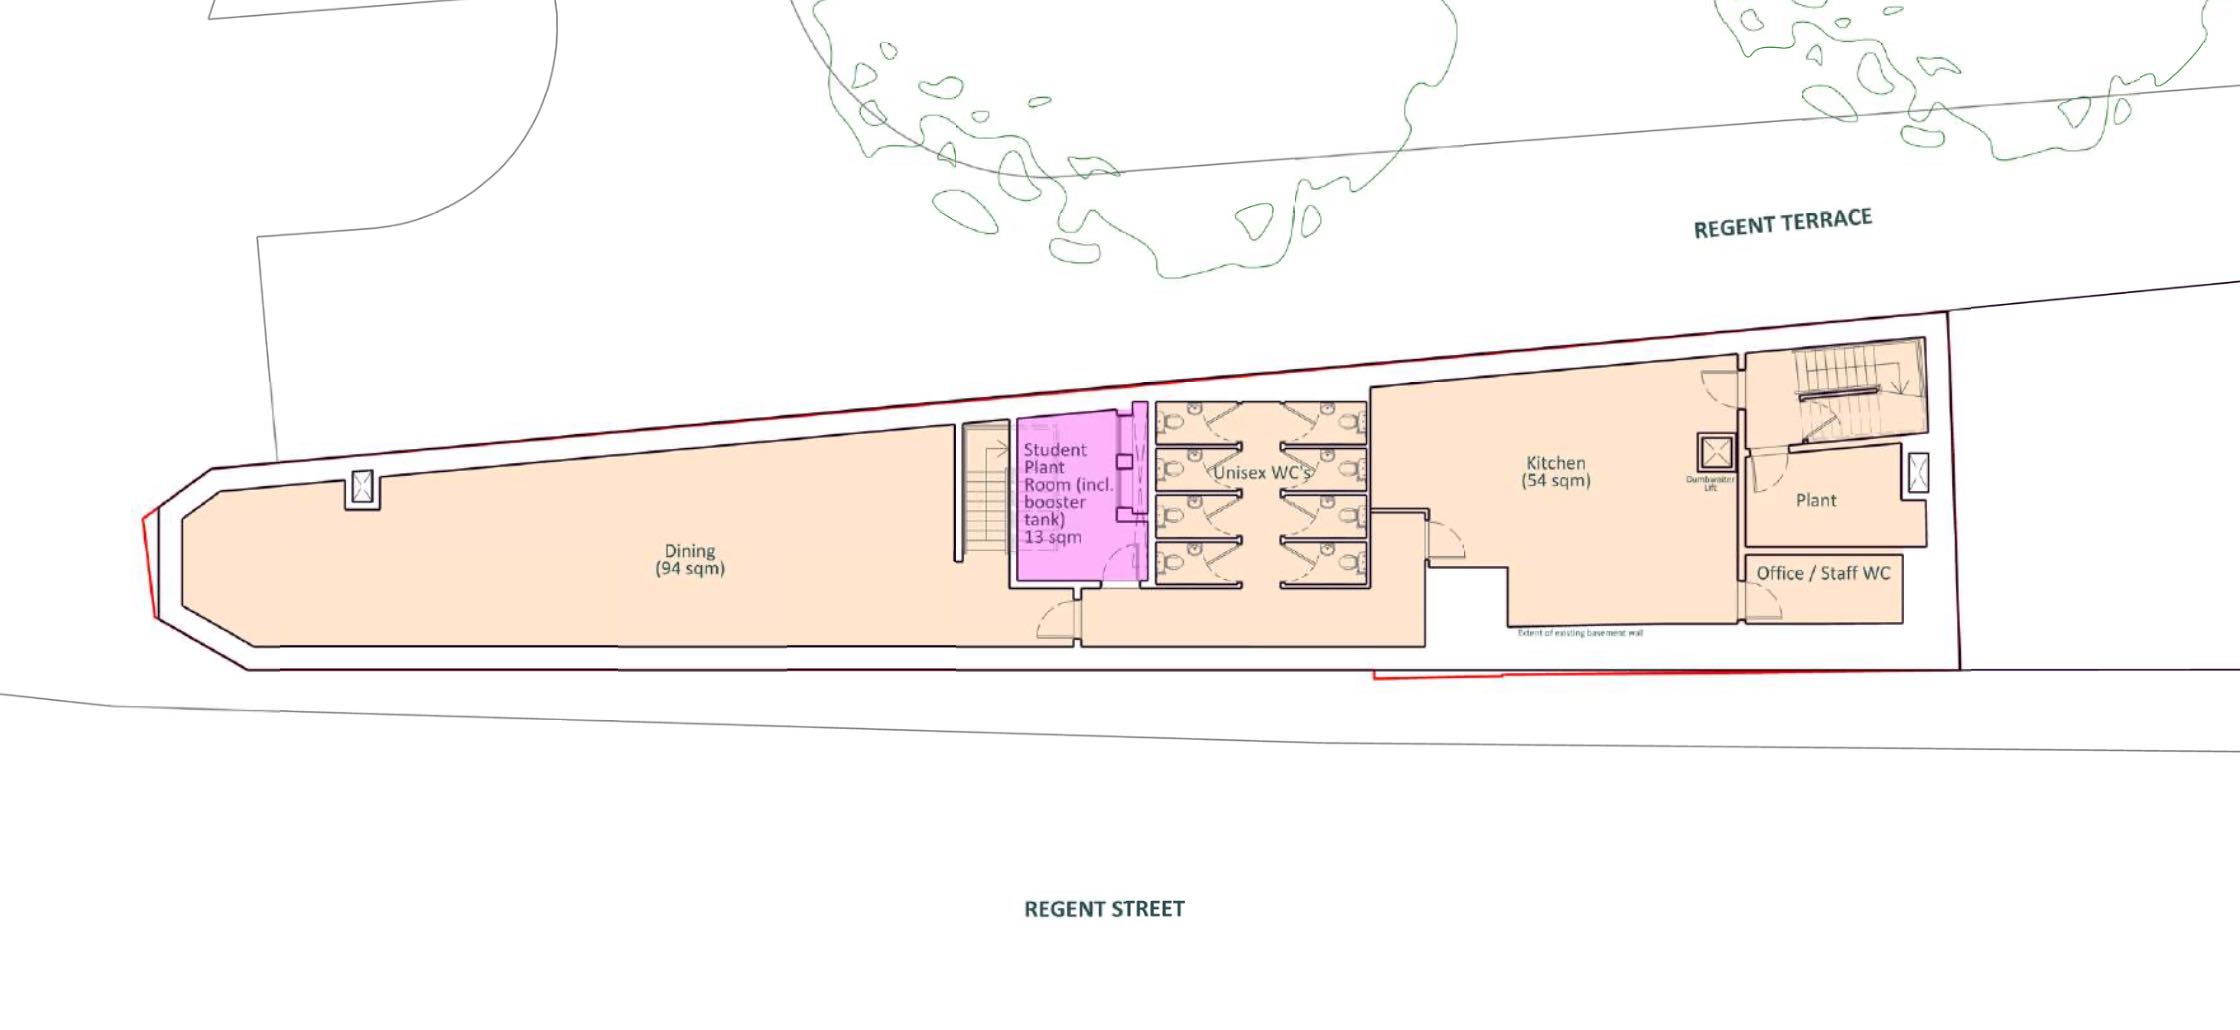 Proposed basement floor plan